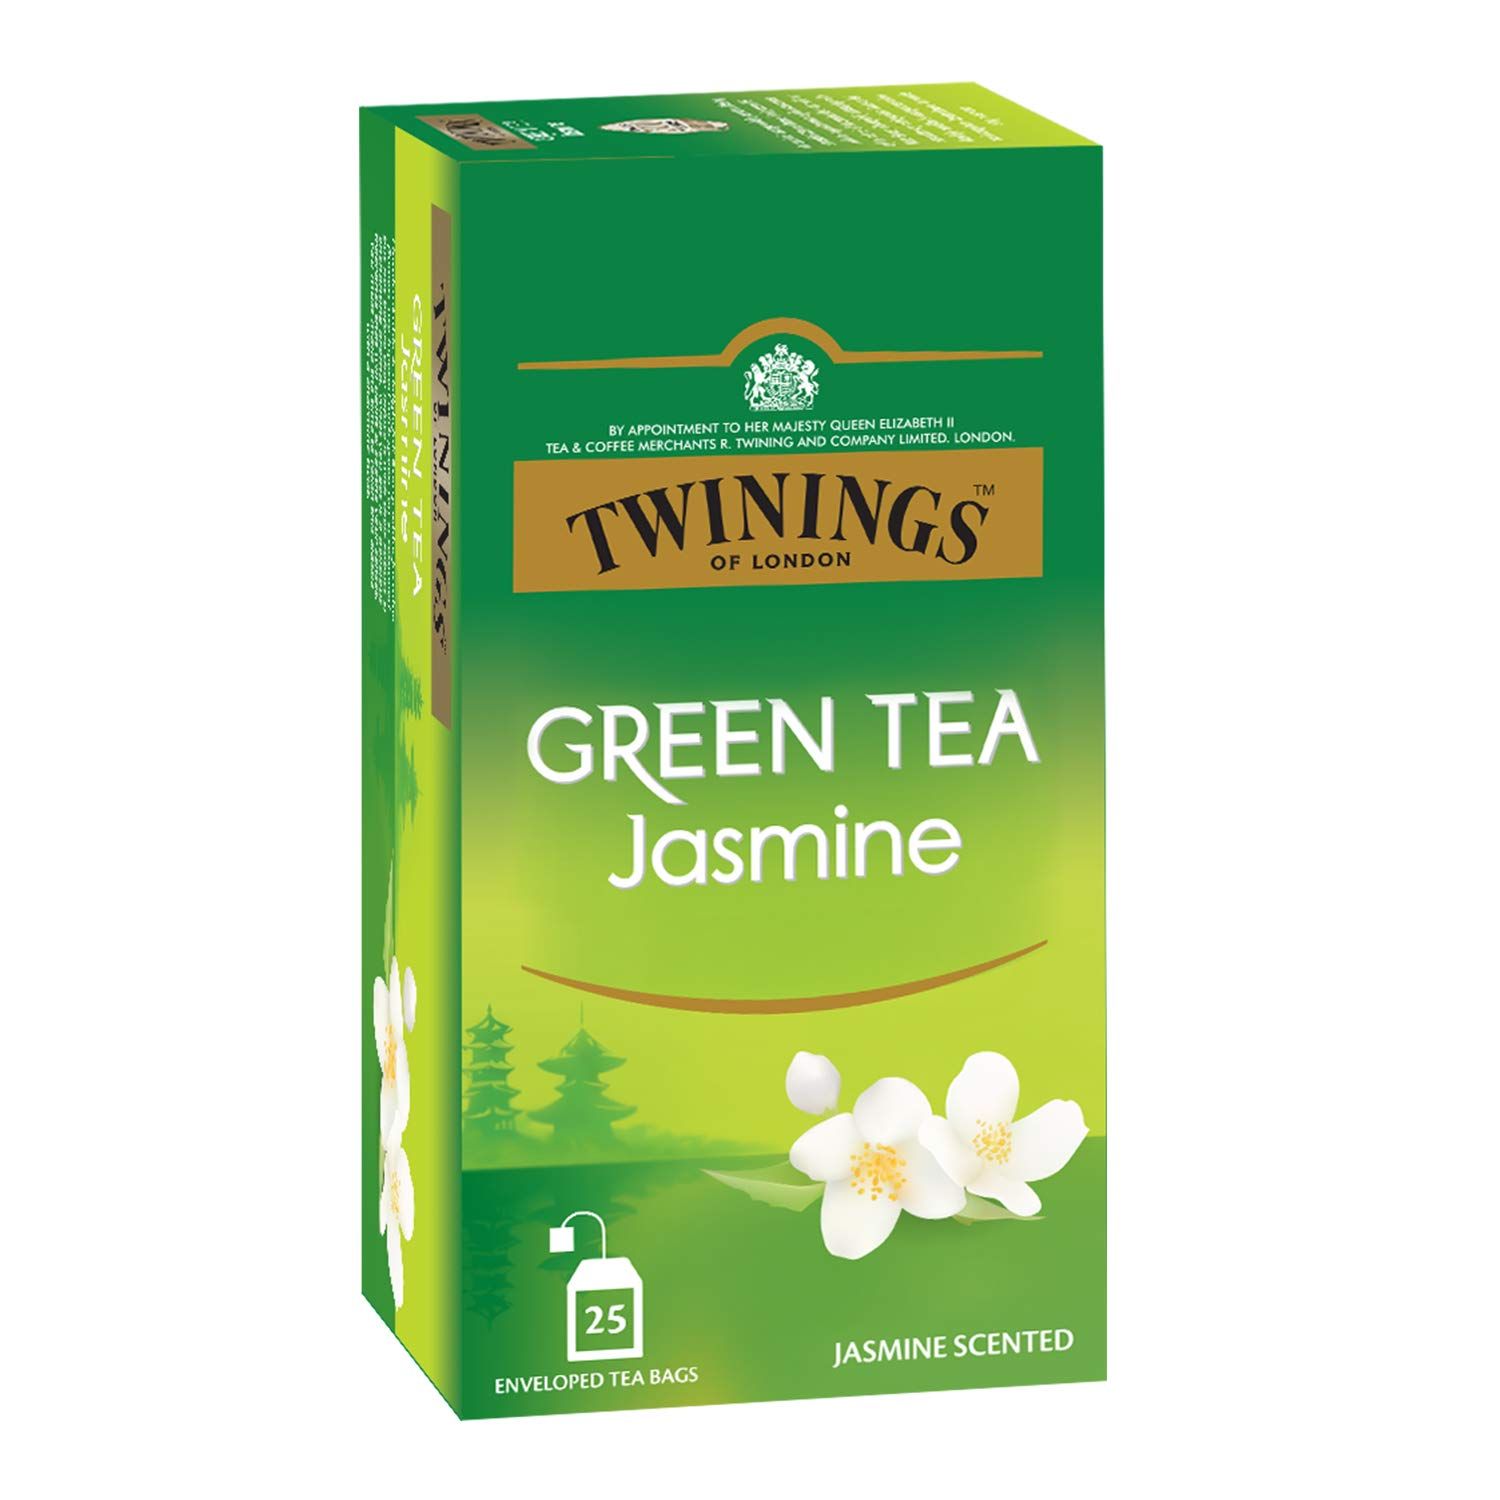 Tinings Green Tea Jasmine Image